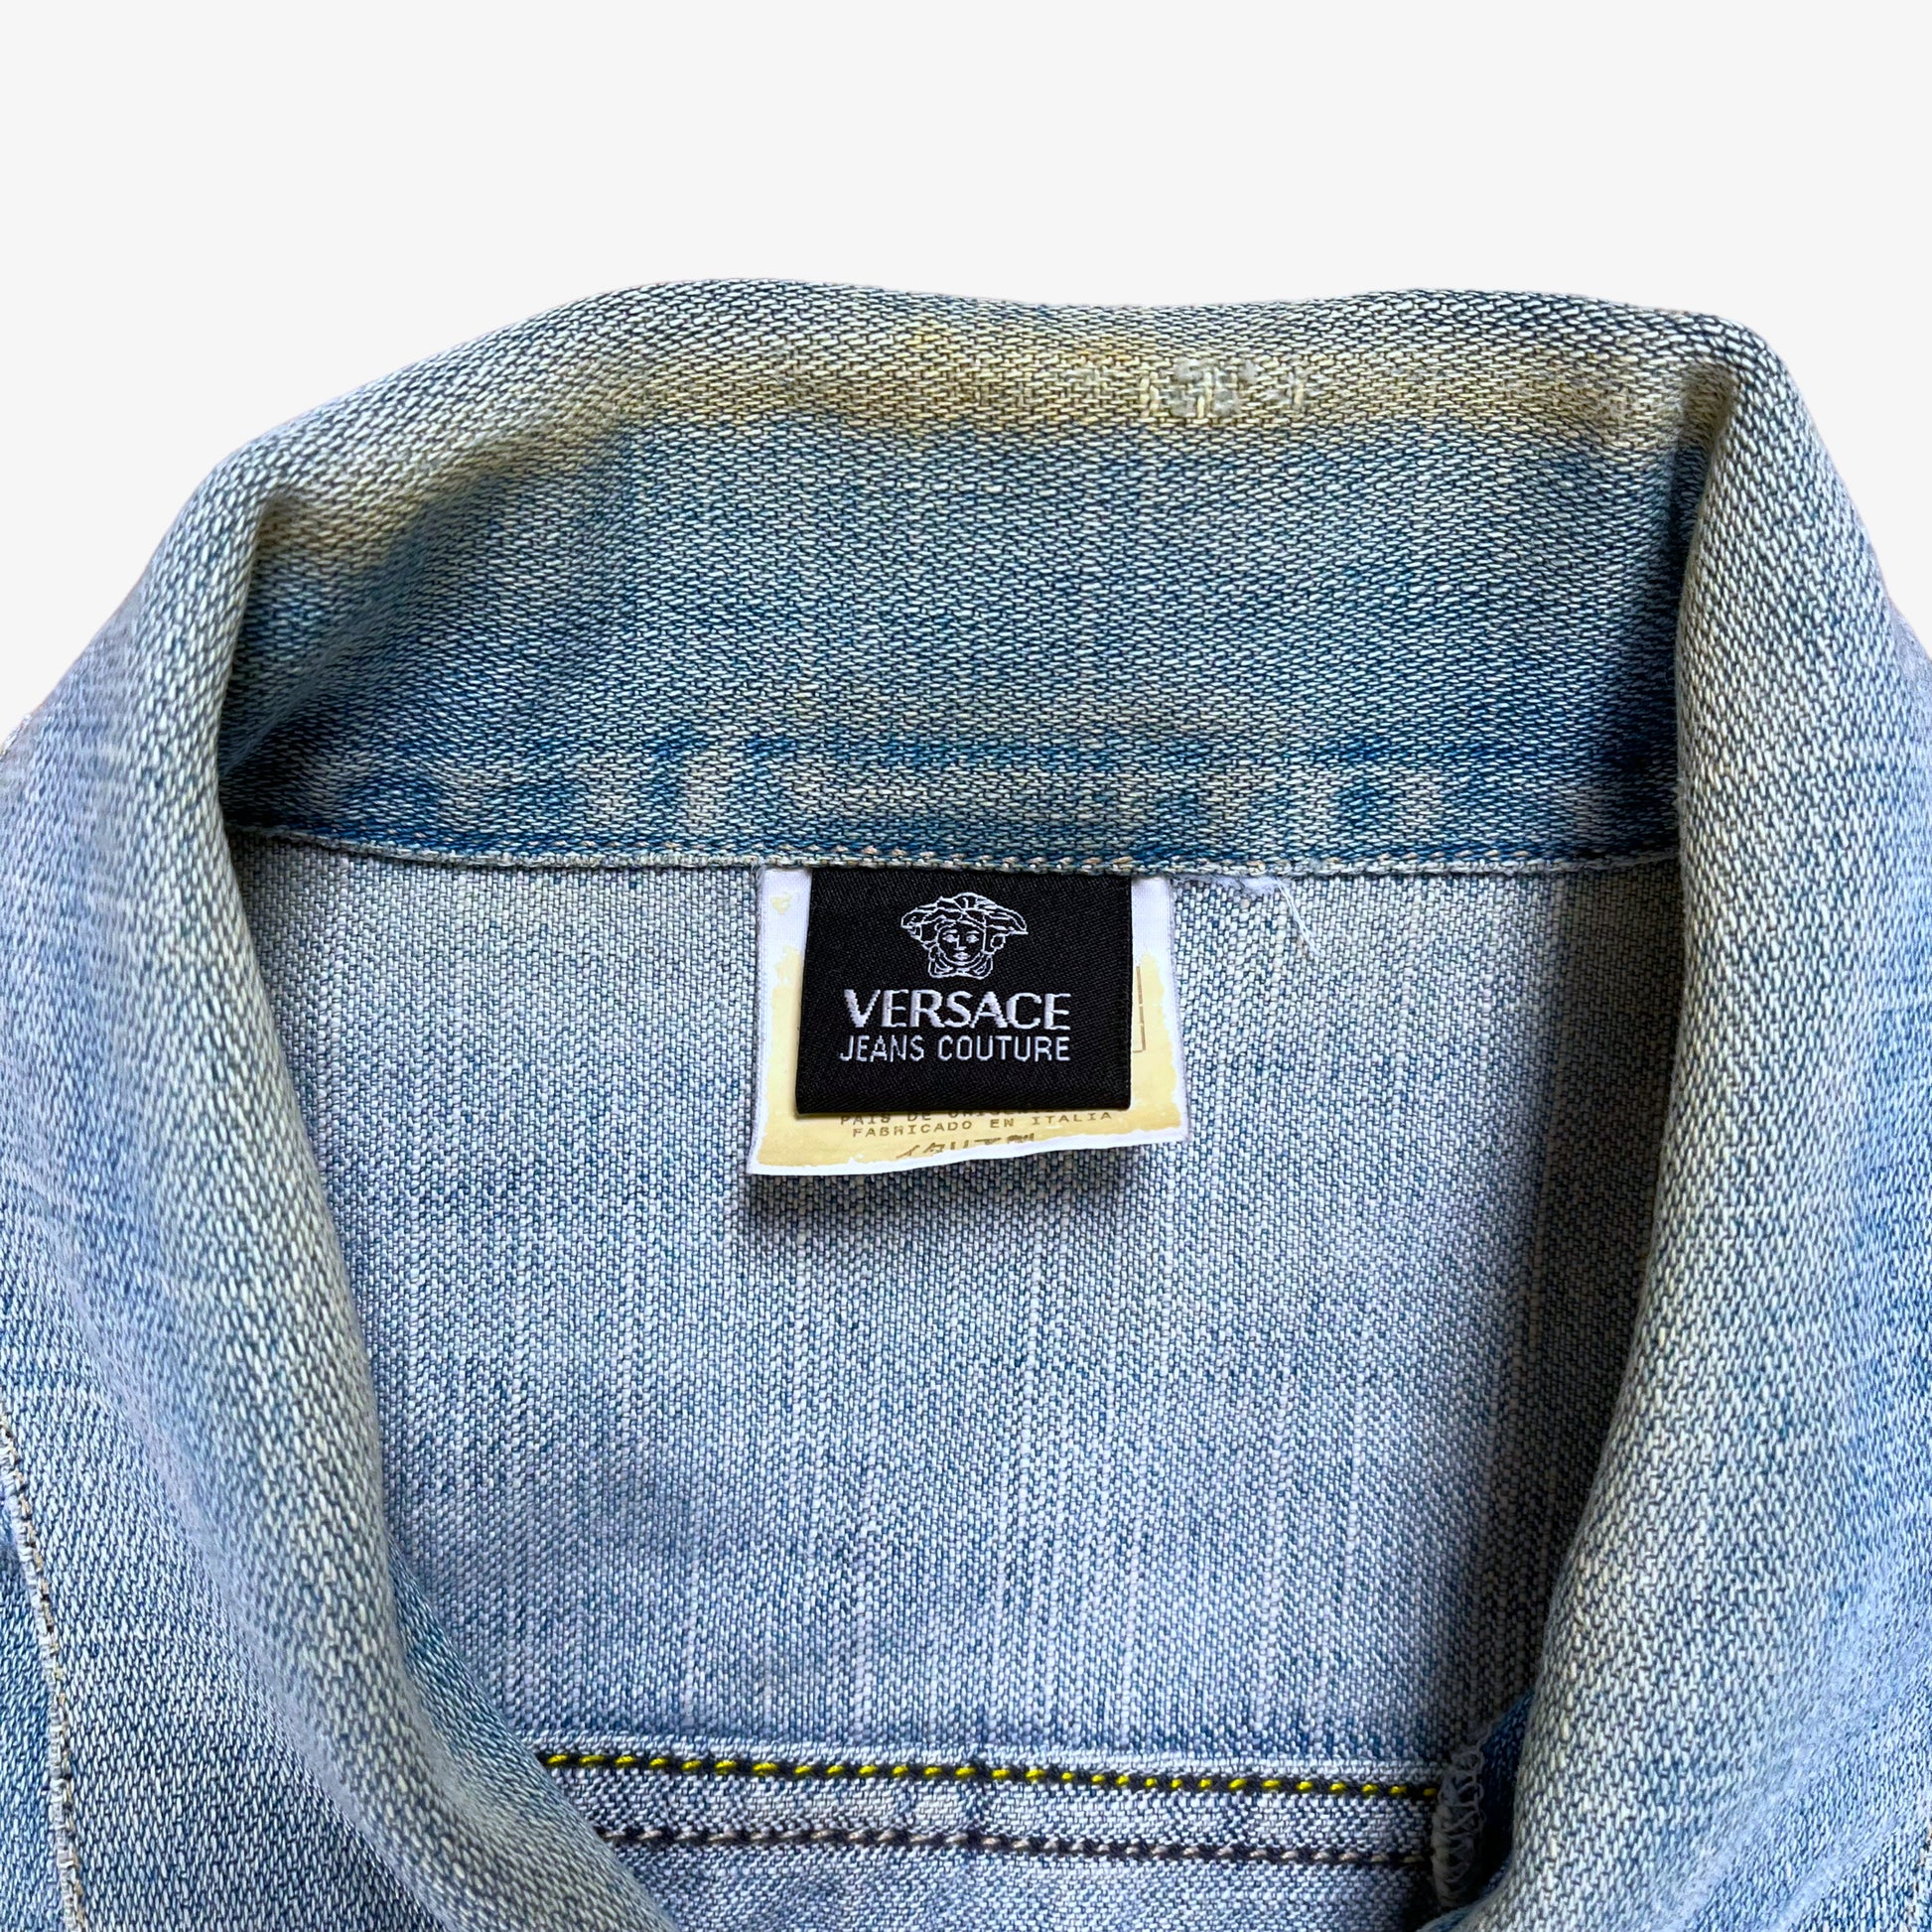 Vintage 90s Versace Jeans Couture Denim Jacket Label - Casspios Dream